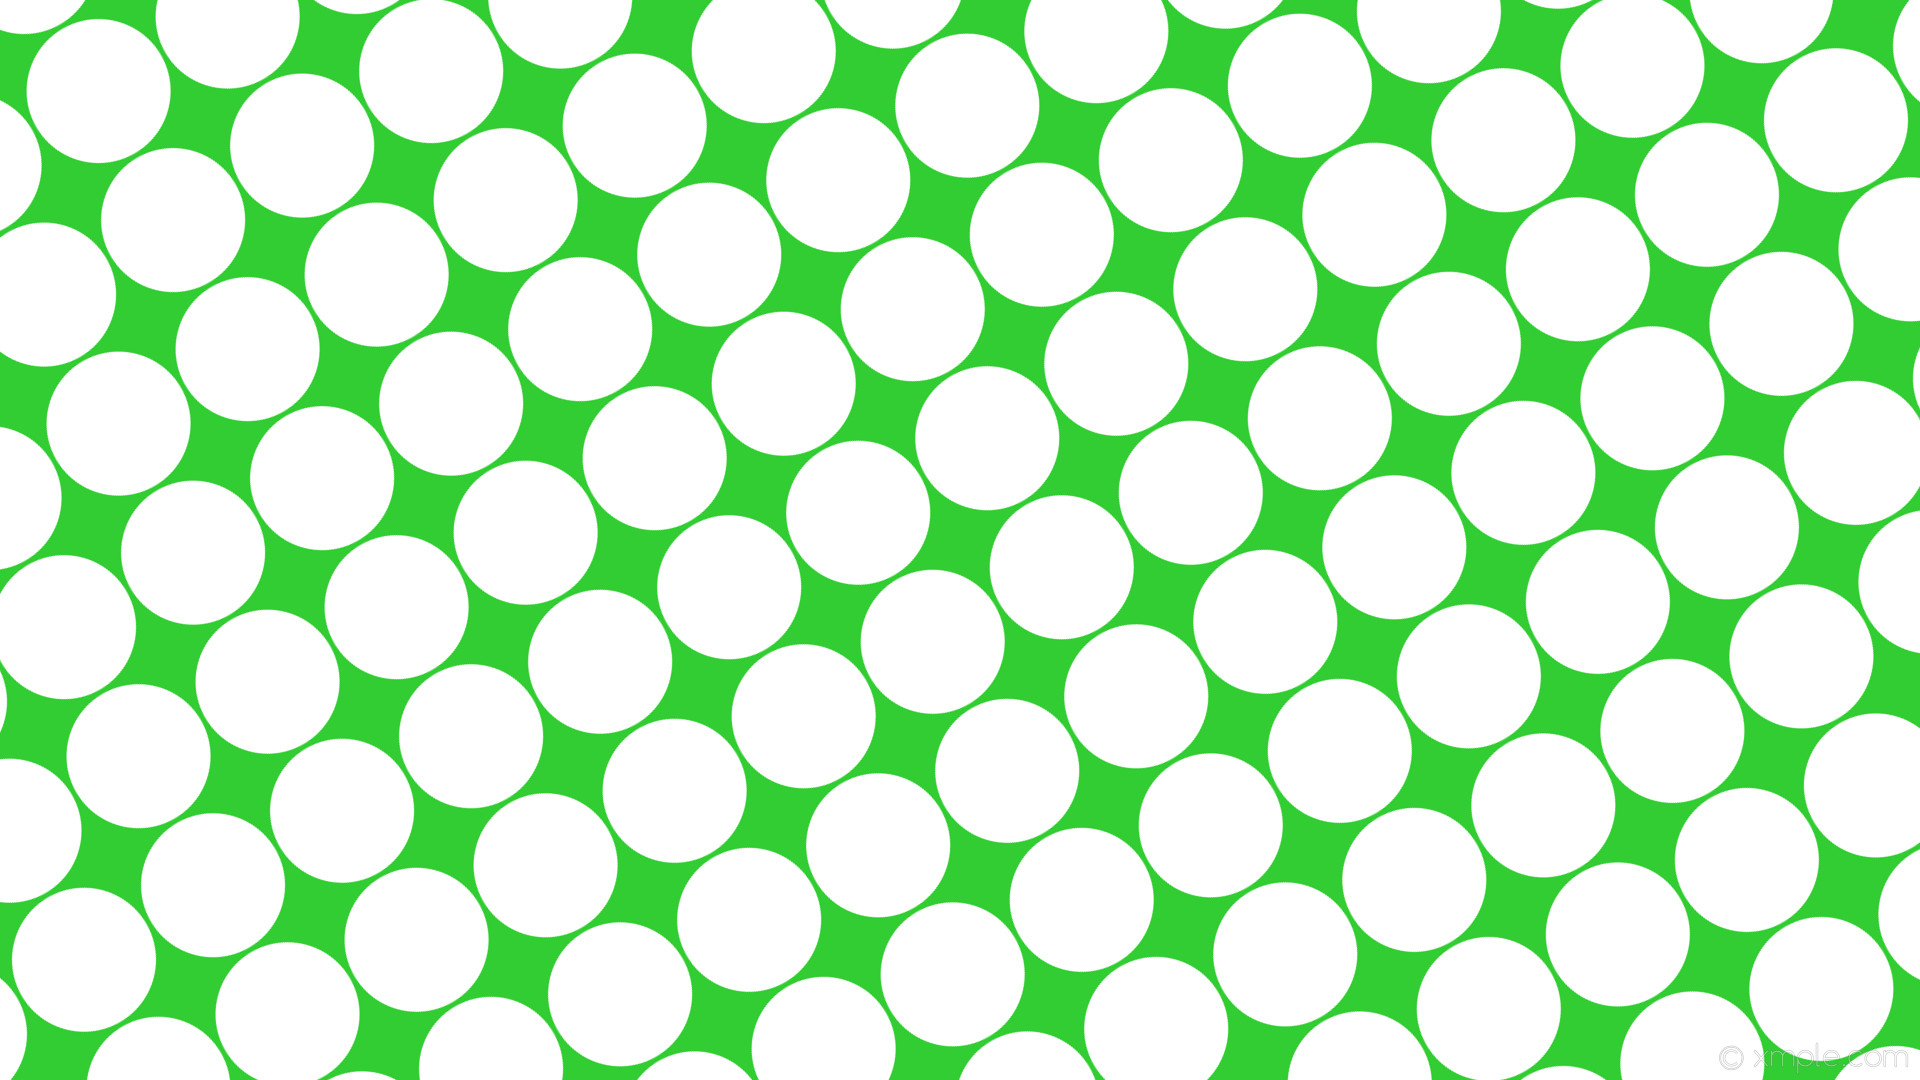 1920x1080 wallpaper white green polka dots spots lime green #32cd32 #ffffff 120Â°  144px 149px